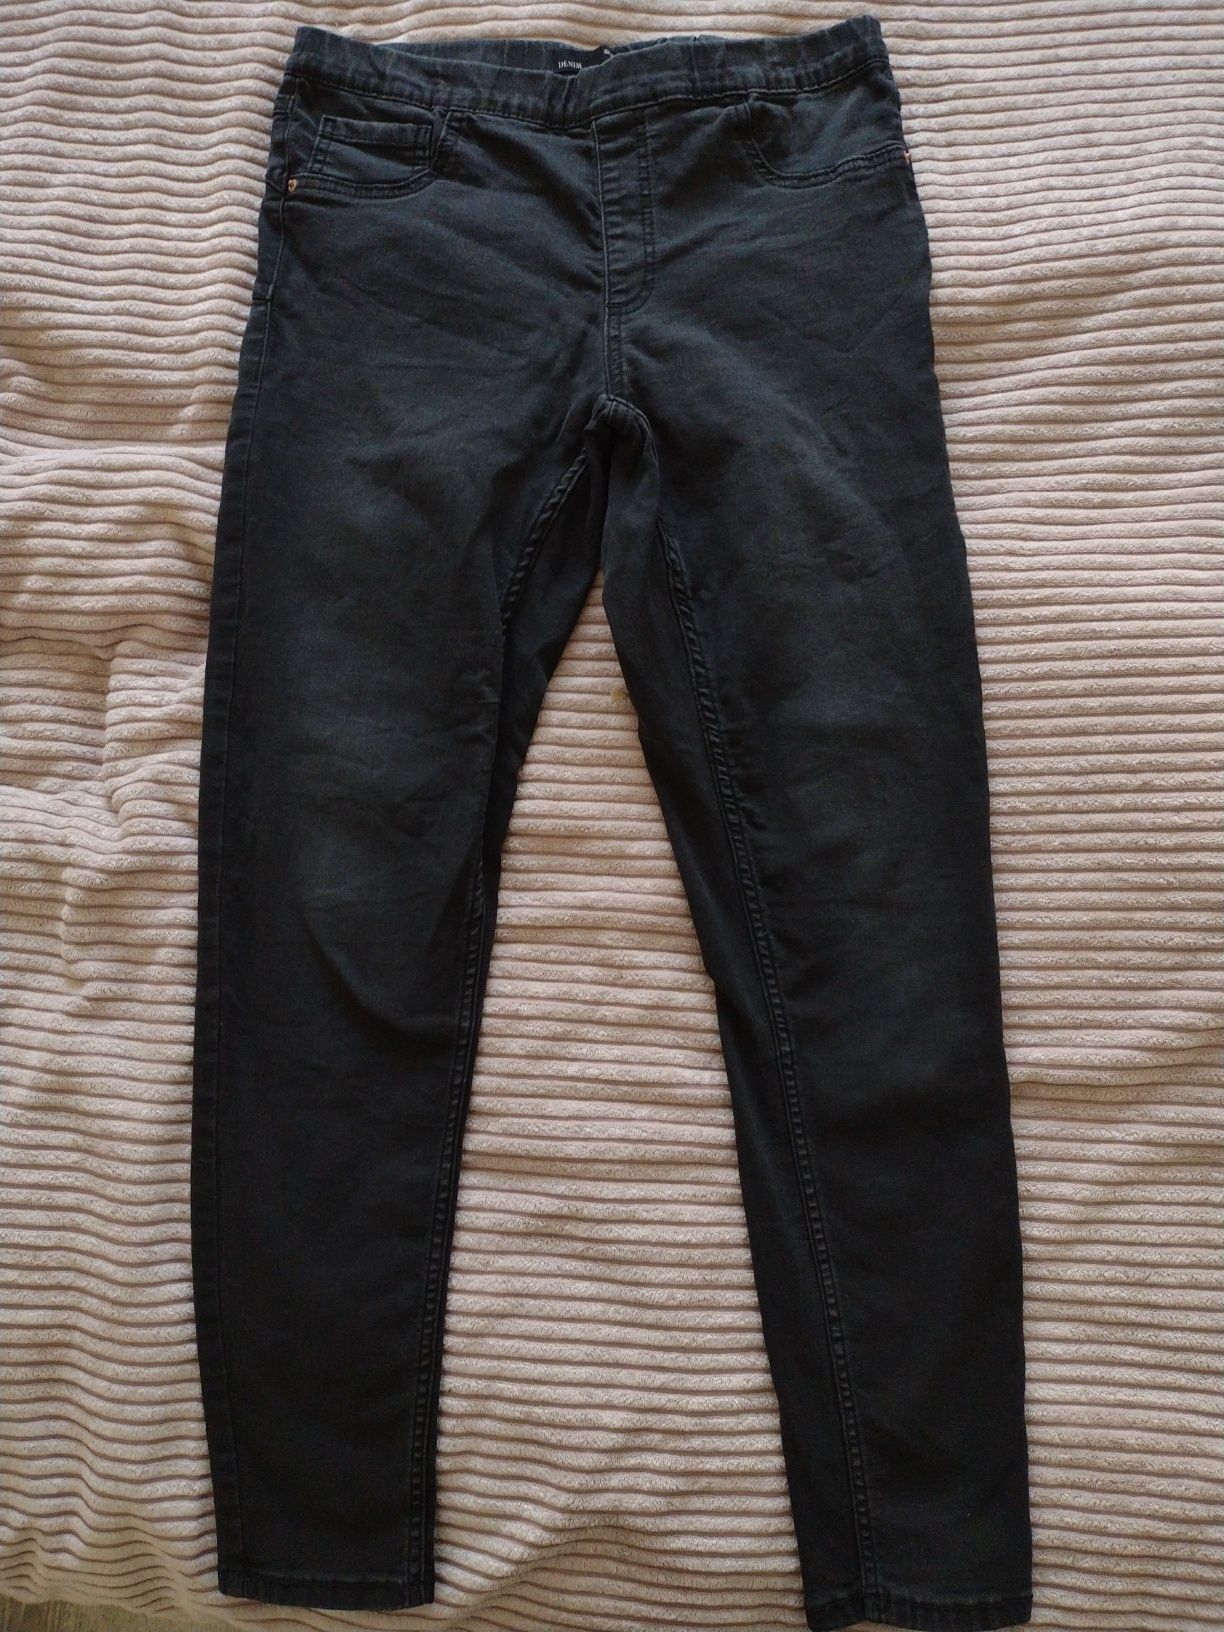 Spodnie jeansowe jegginsy czarne 40